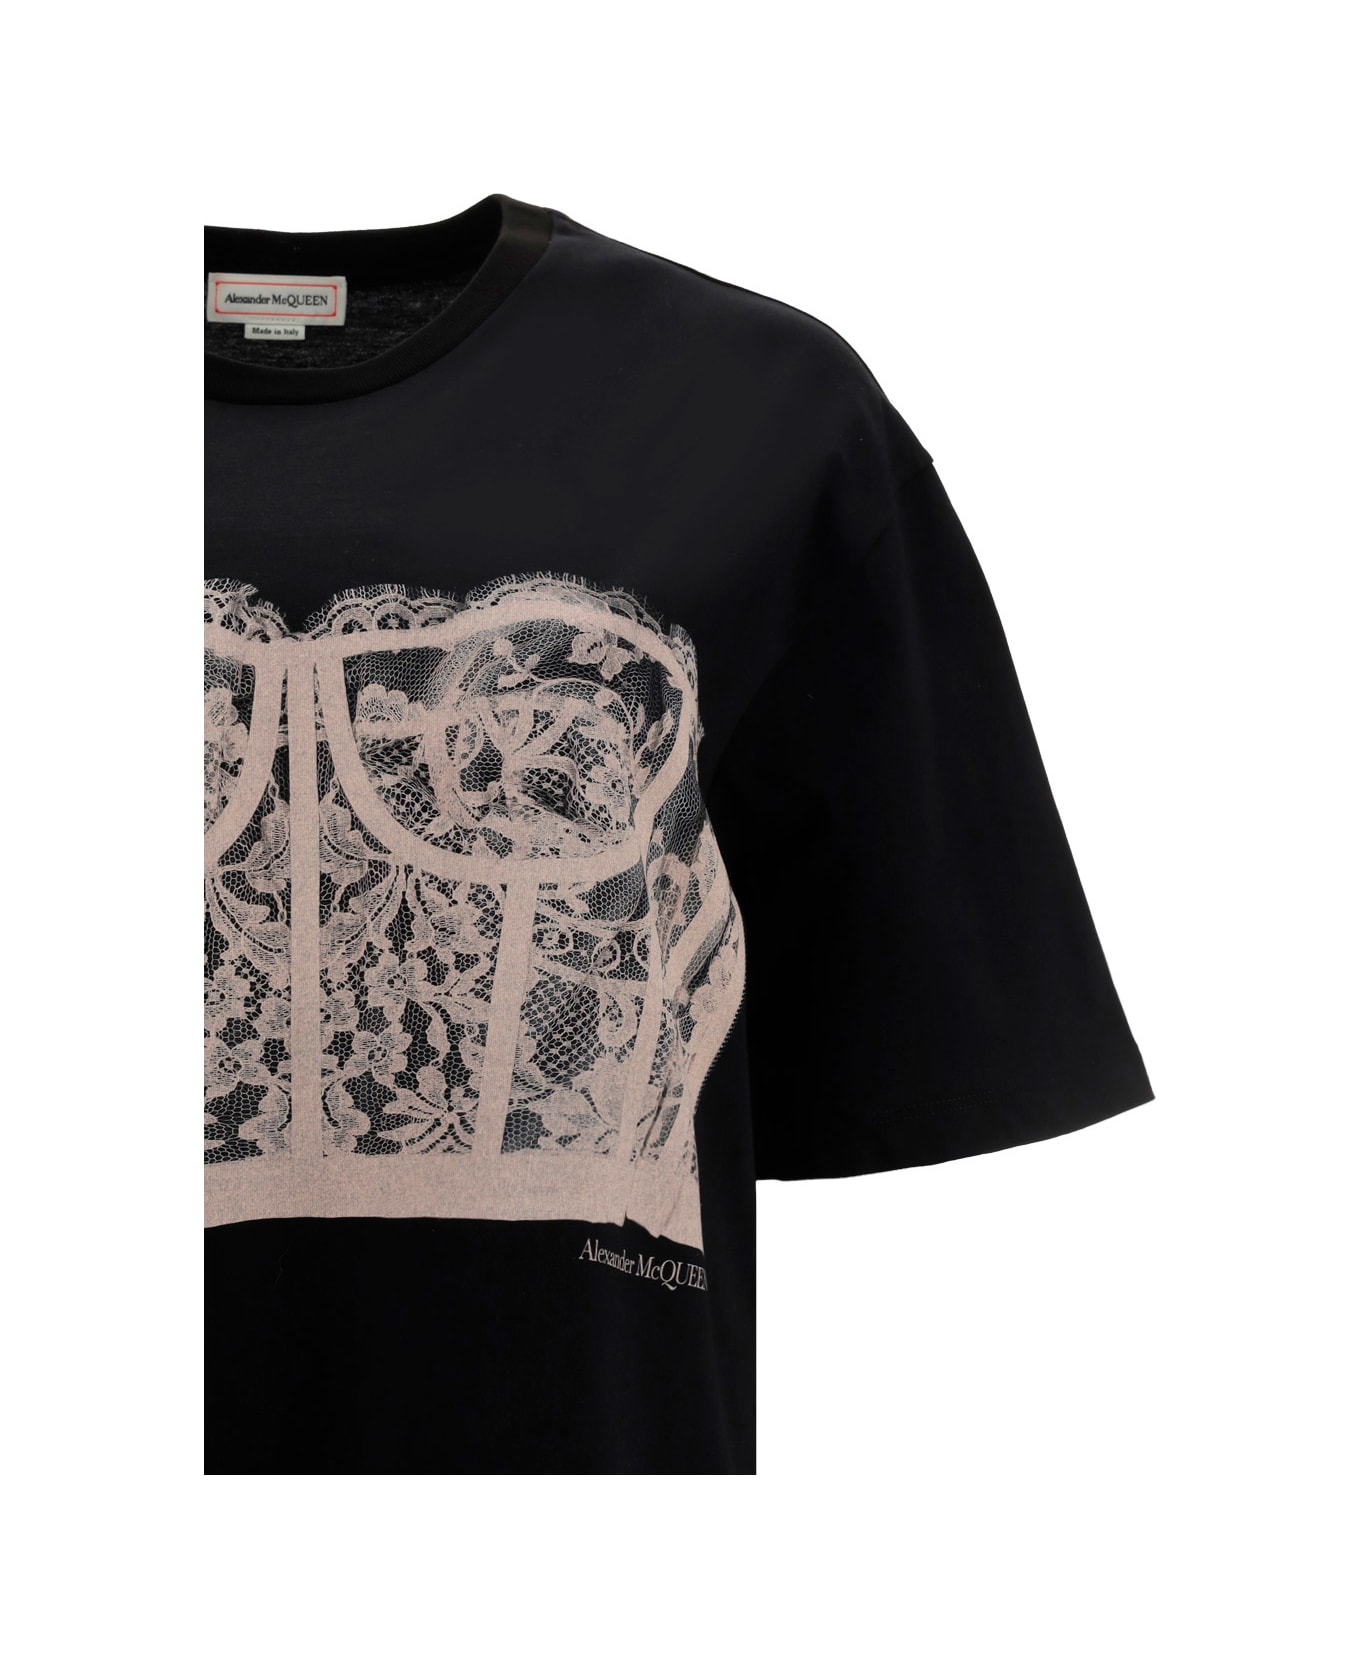 Alexander McQueen Lace Corset T-shirt - Black/shell